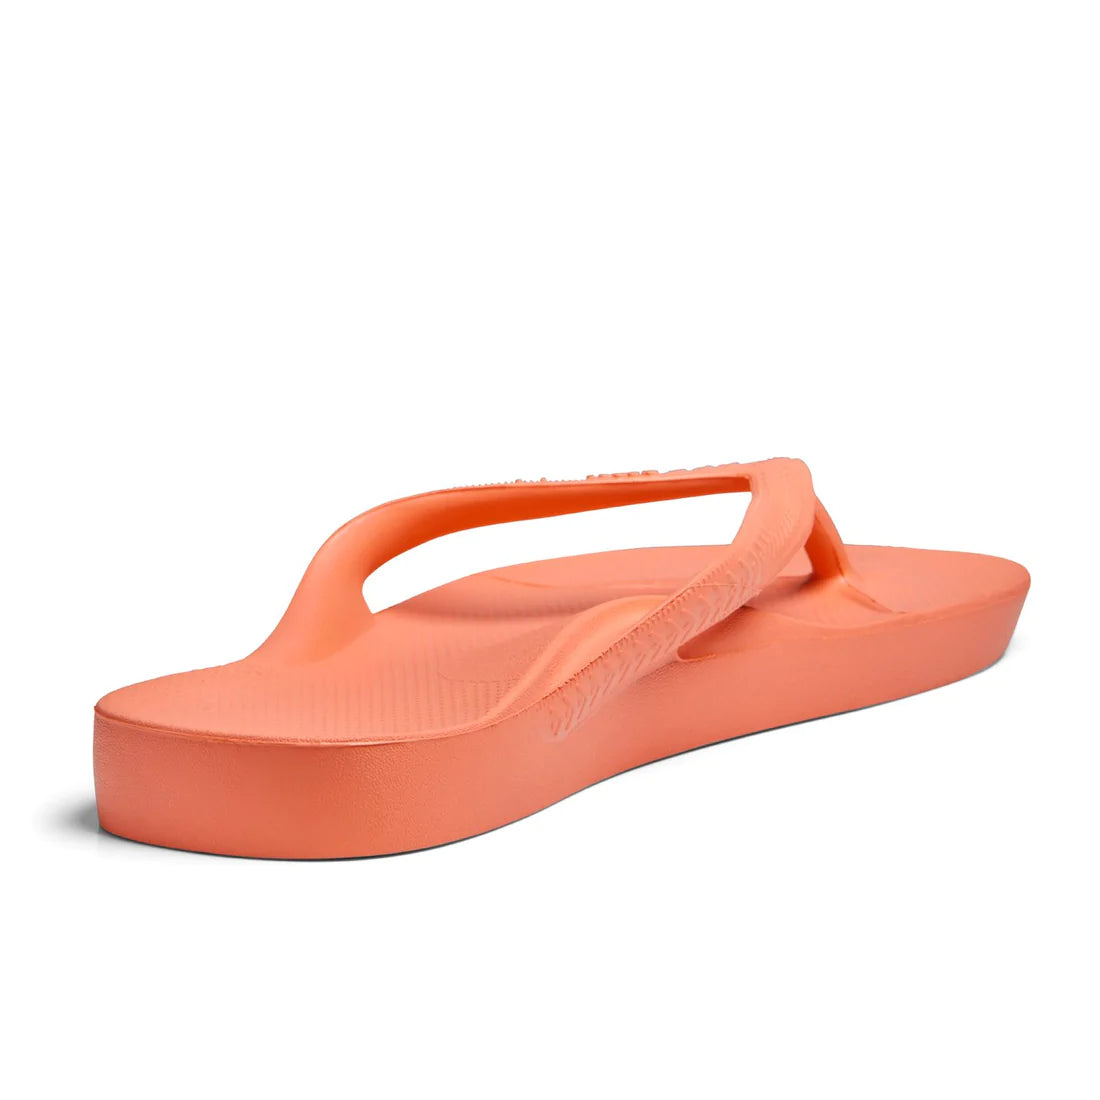 Archie's Support Flip Flops Peach – Orleans Shoe Co.